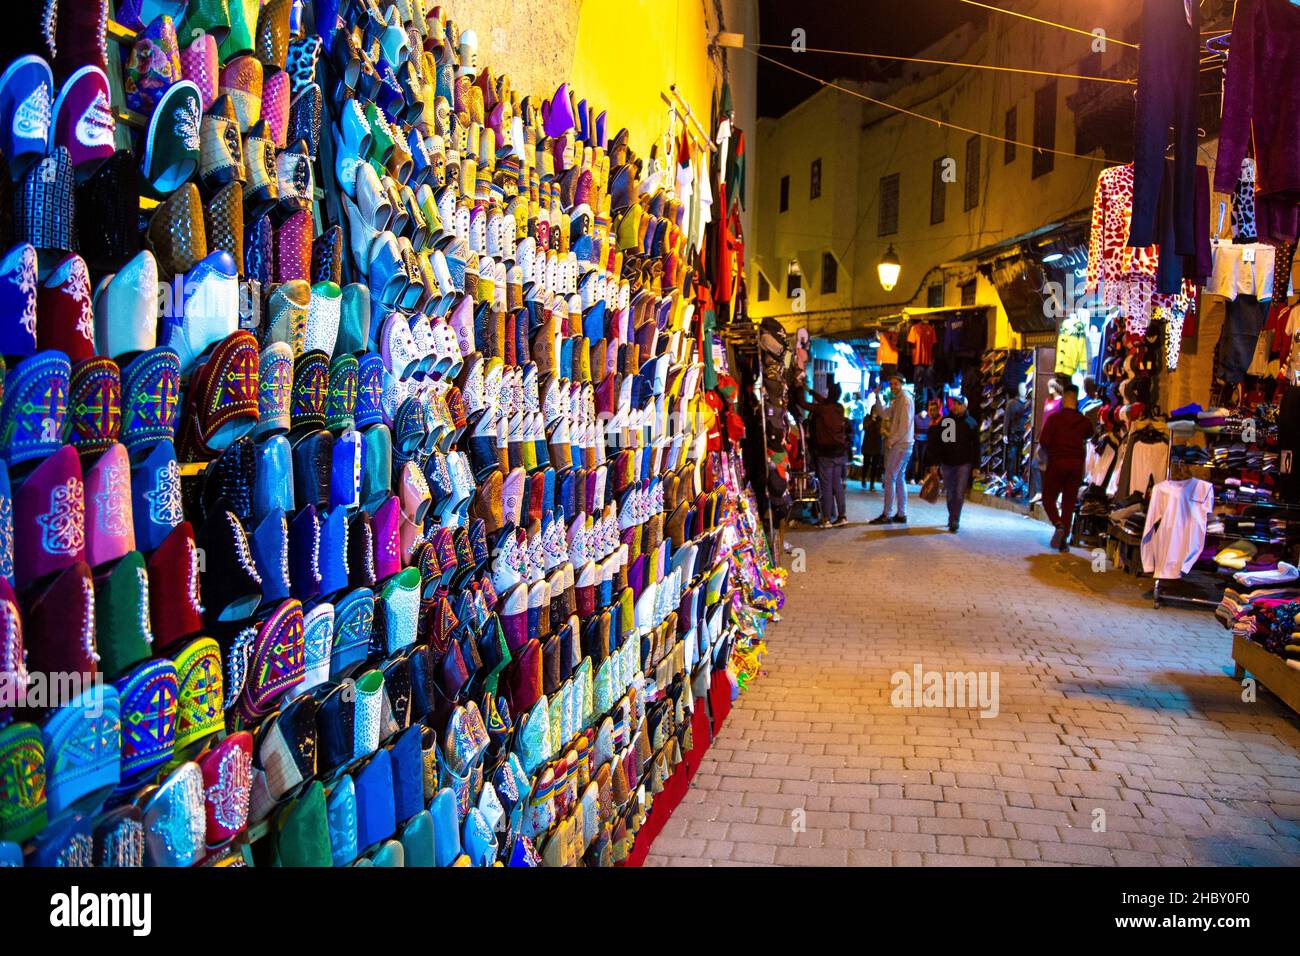 Pantoufles marocaines, rue étroite avec des étals de marché et des boutiques dans les souks de la médina, Fès, Maroc Banque D'Images